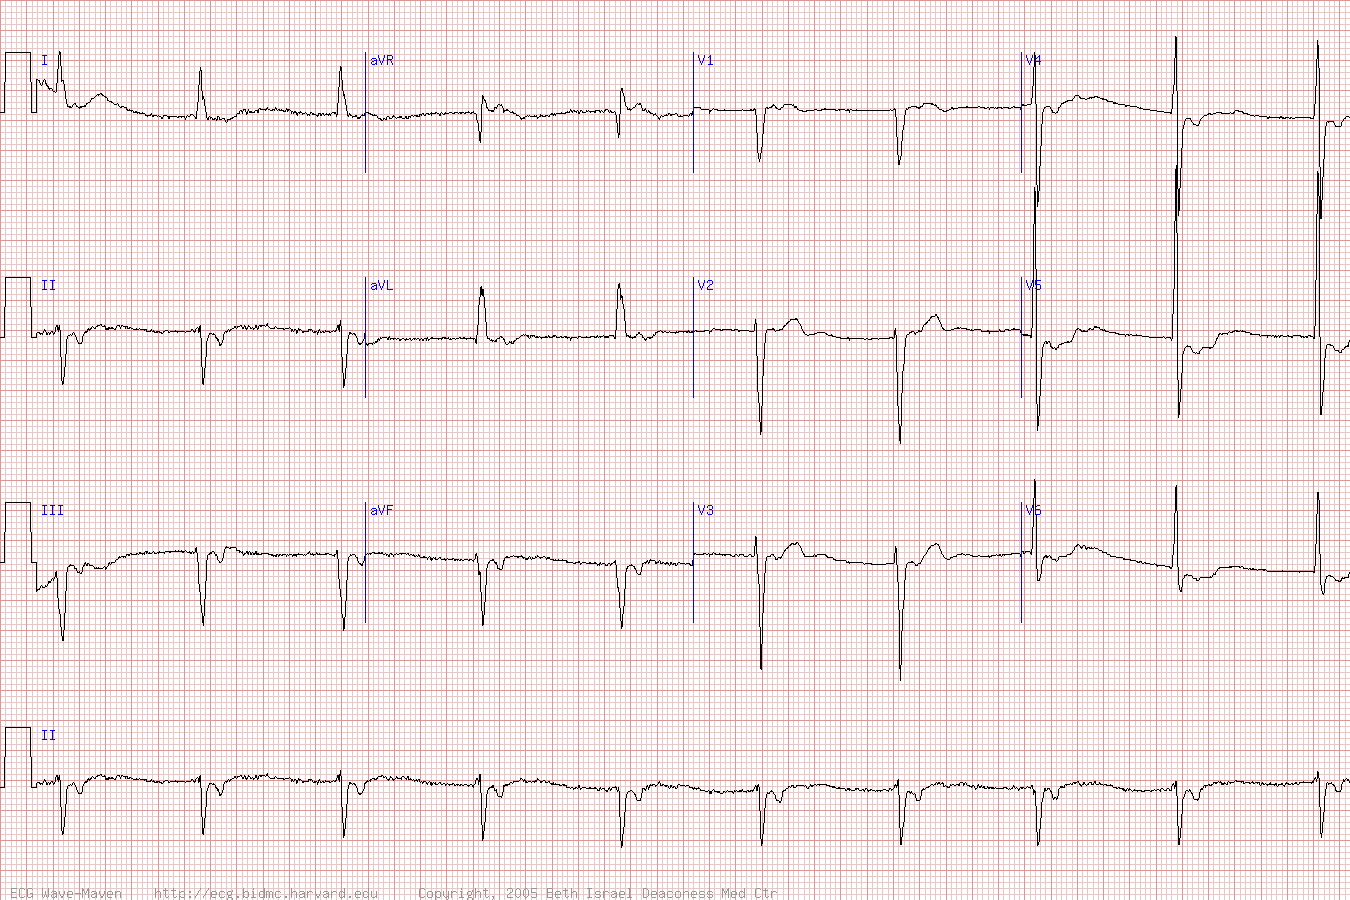 ЭКГ при узловой брадикардии с ретроградным P после QRS.